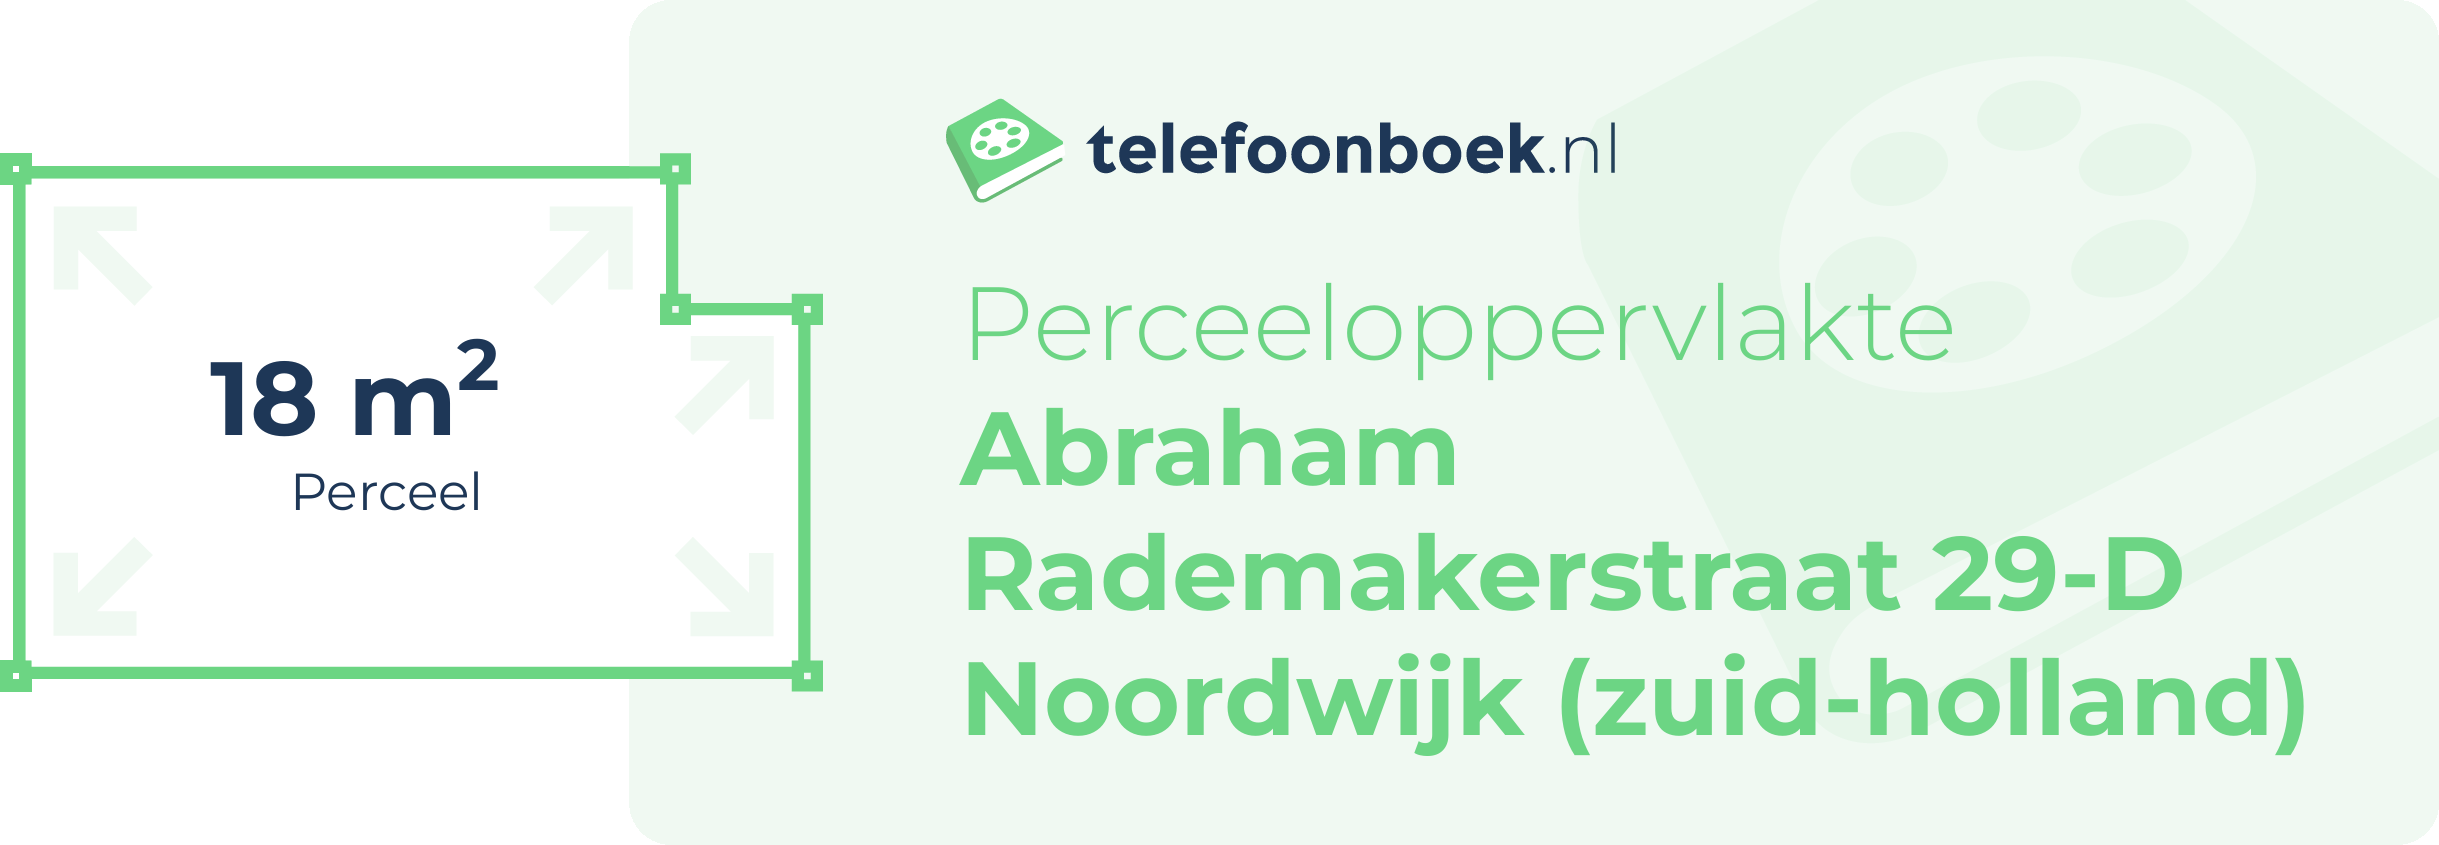 Perceeloppervlakte Abraham Rademakerstraat 29-D Noordwijk (Zuid-Holland)